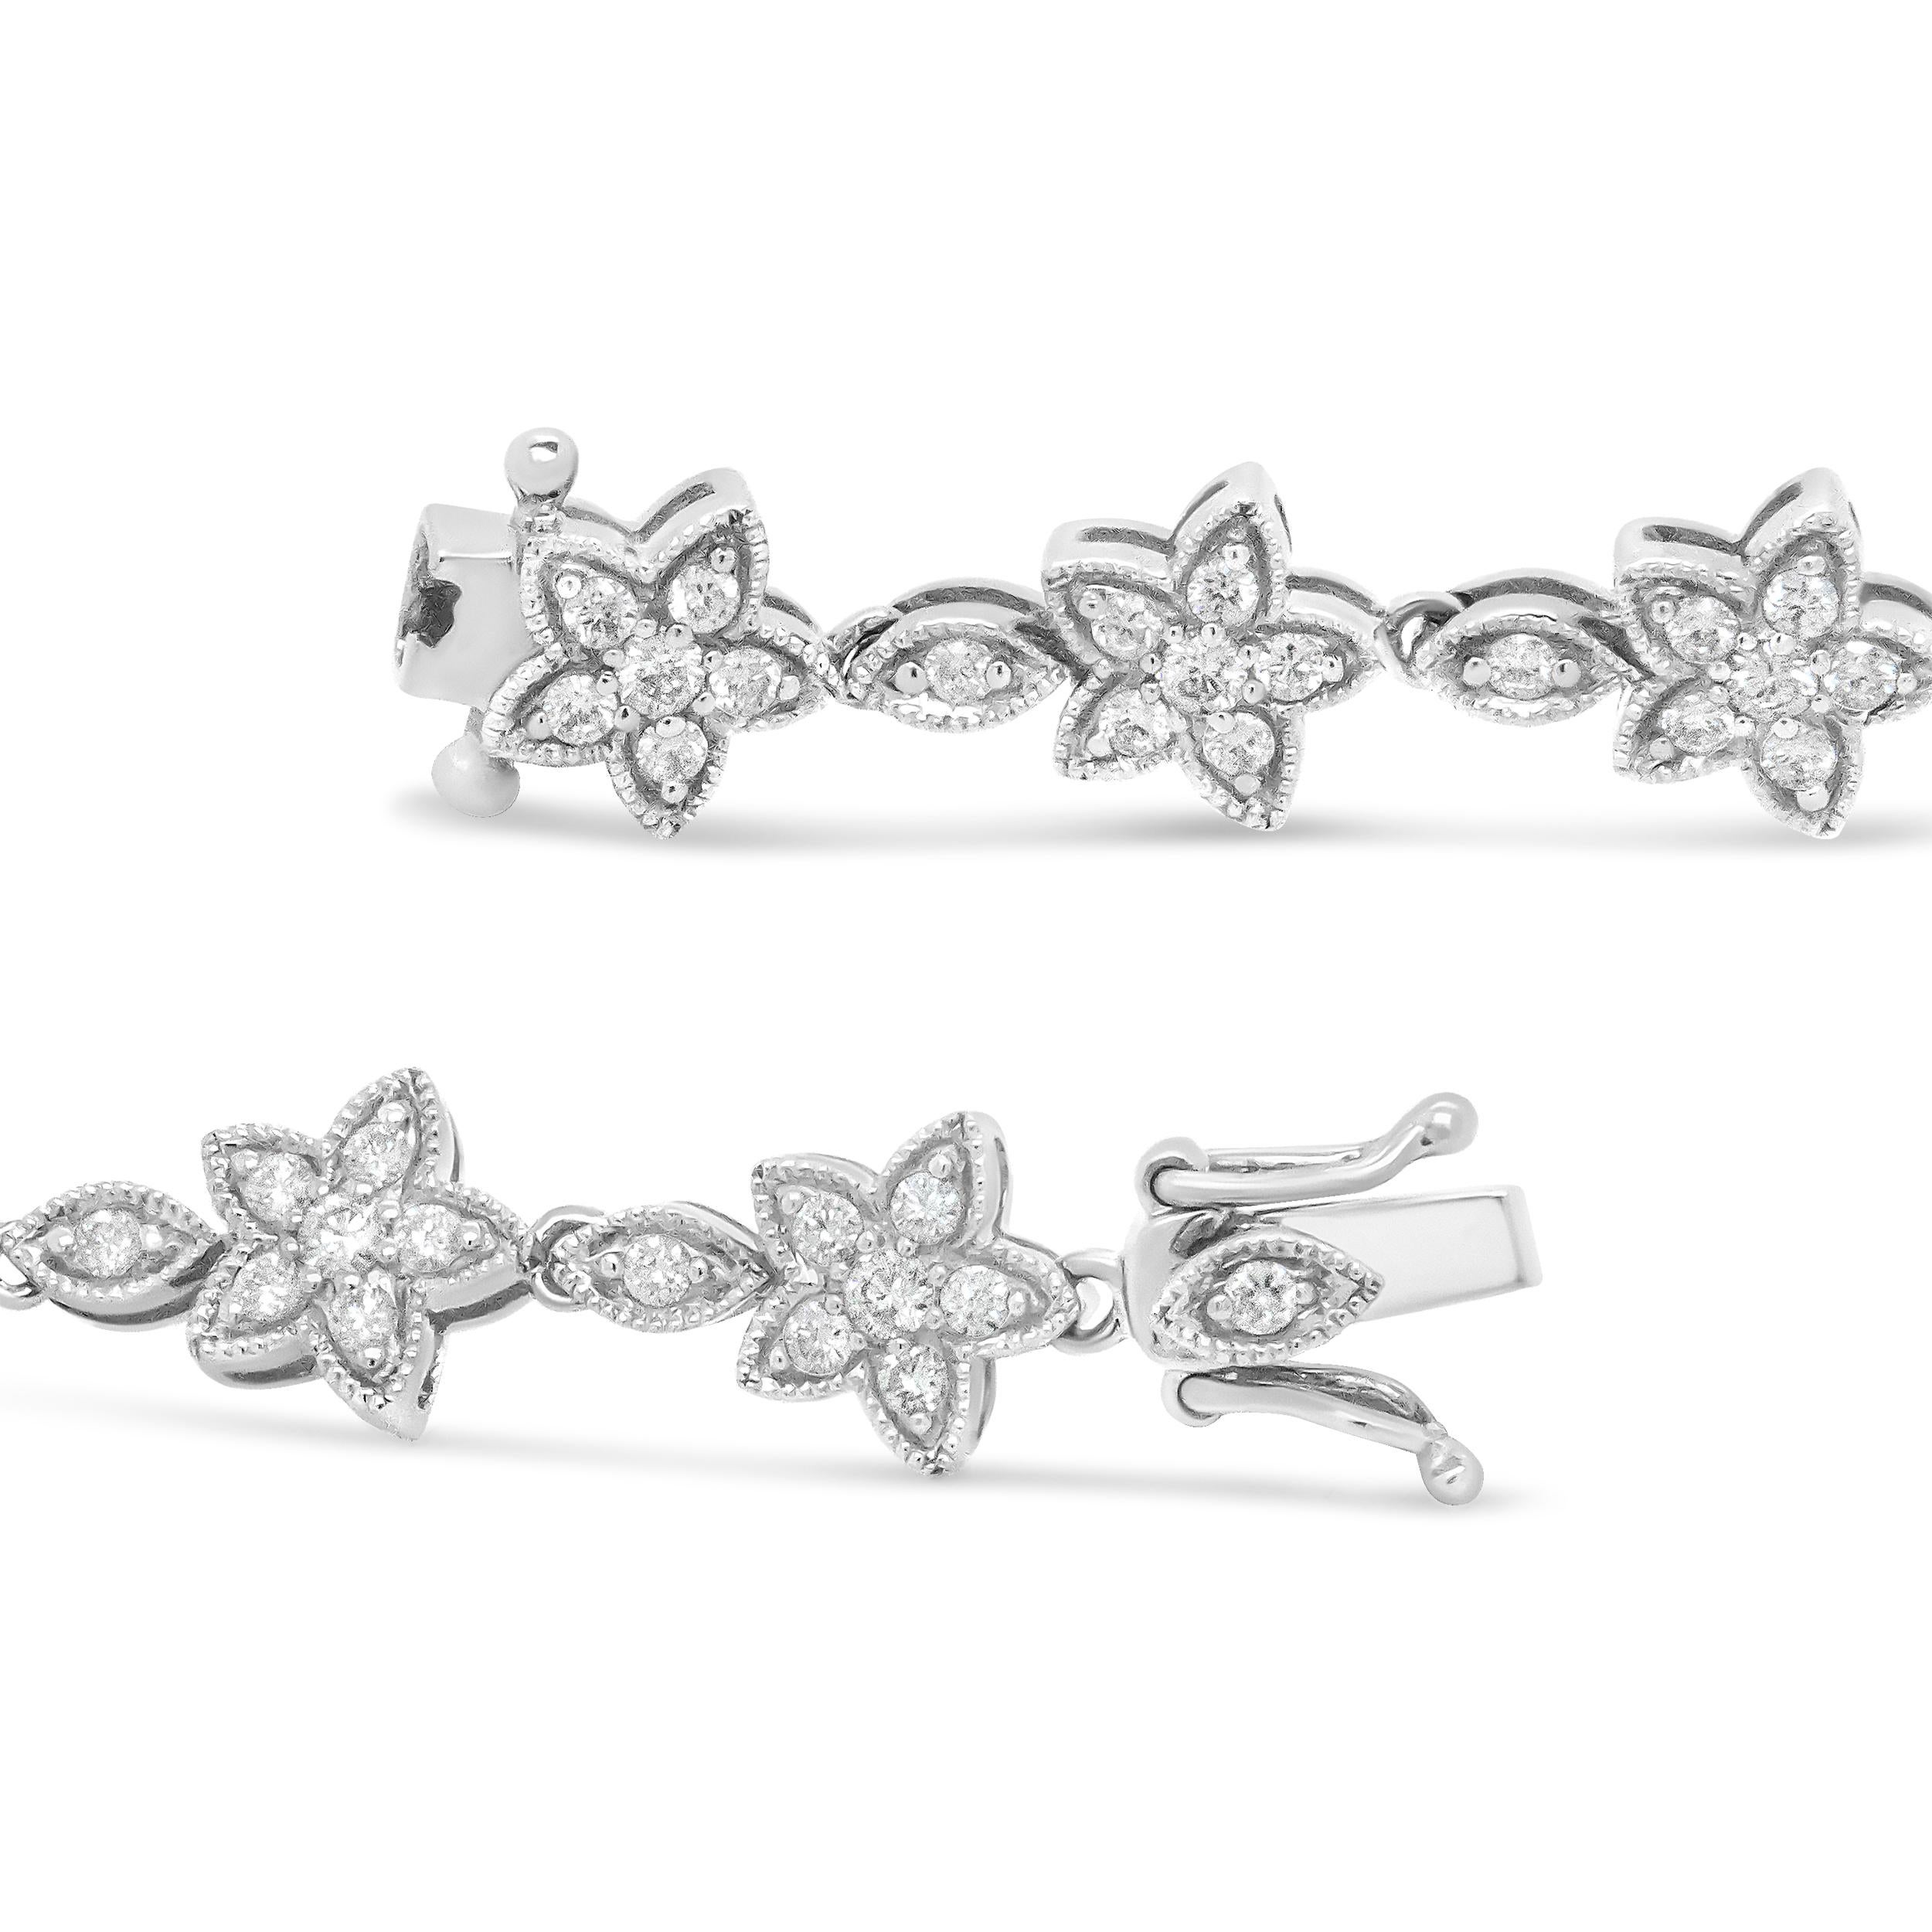 Modern 14K White Gold 1 1/5 Carat Round Diamond Flower Blossom Link Bracelet For Sale